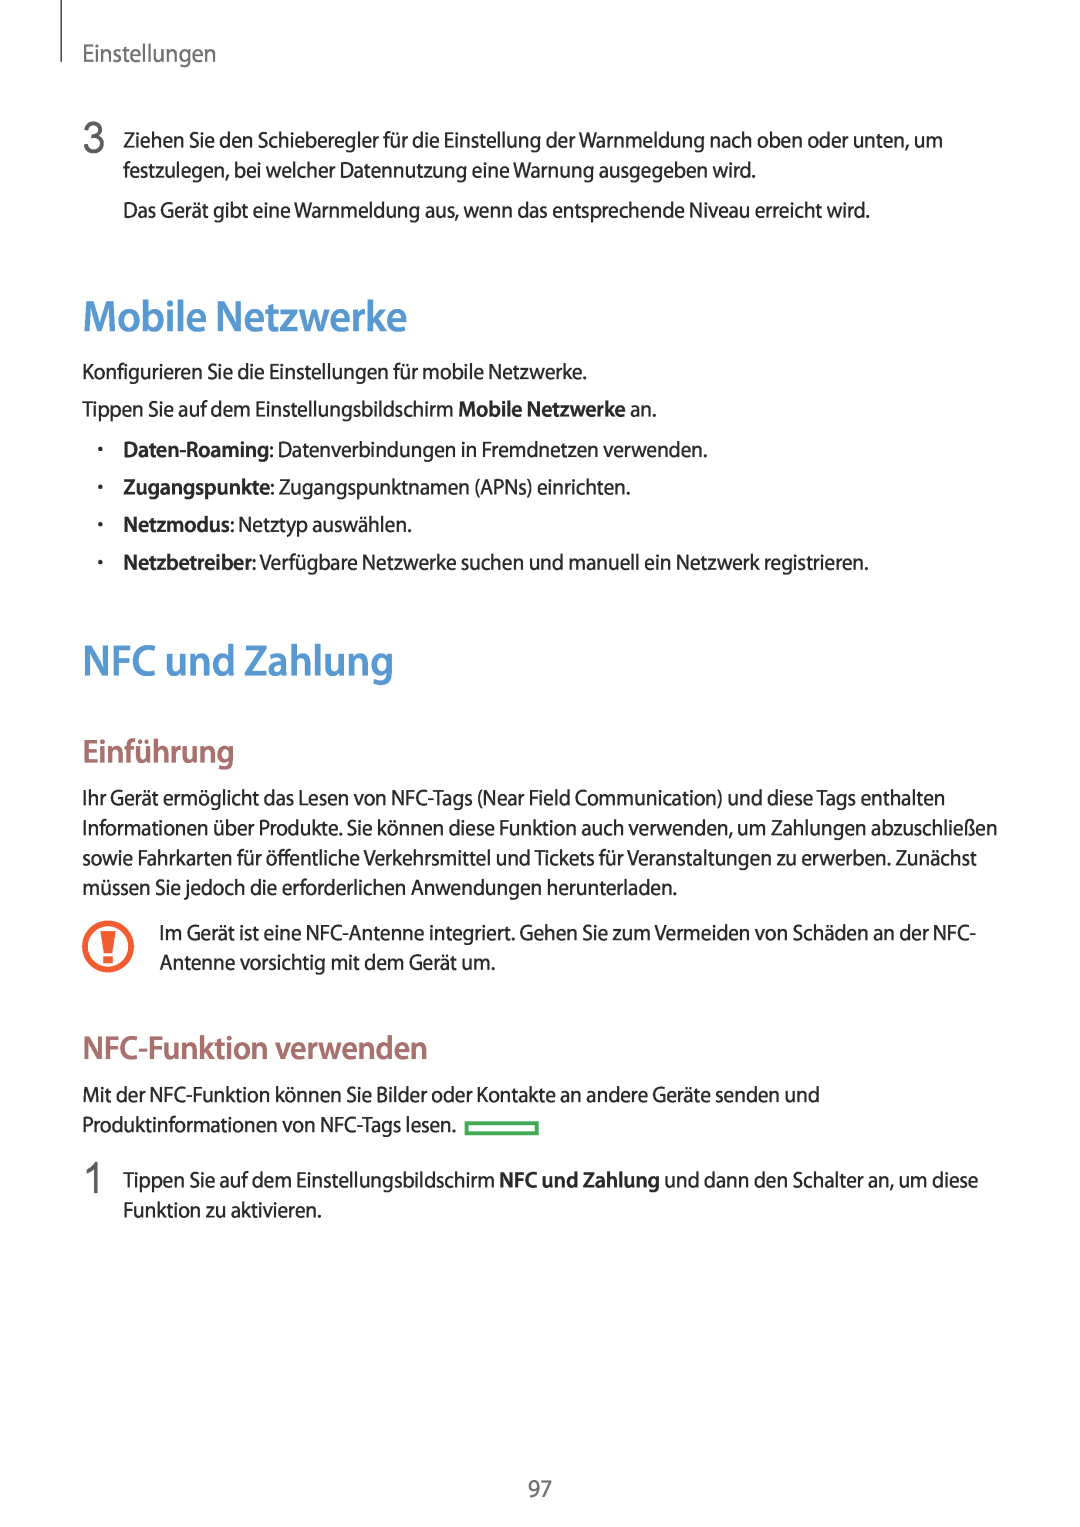 Samsung SM-G920FZKEDBT manual Mobile Netzwerke, NFC und Zahlung, NFC-Funktion verwenden, Einführung, Einstellungen 